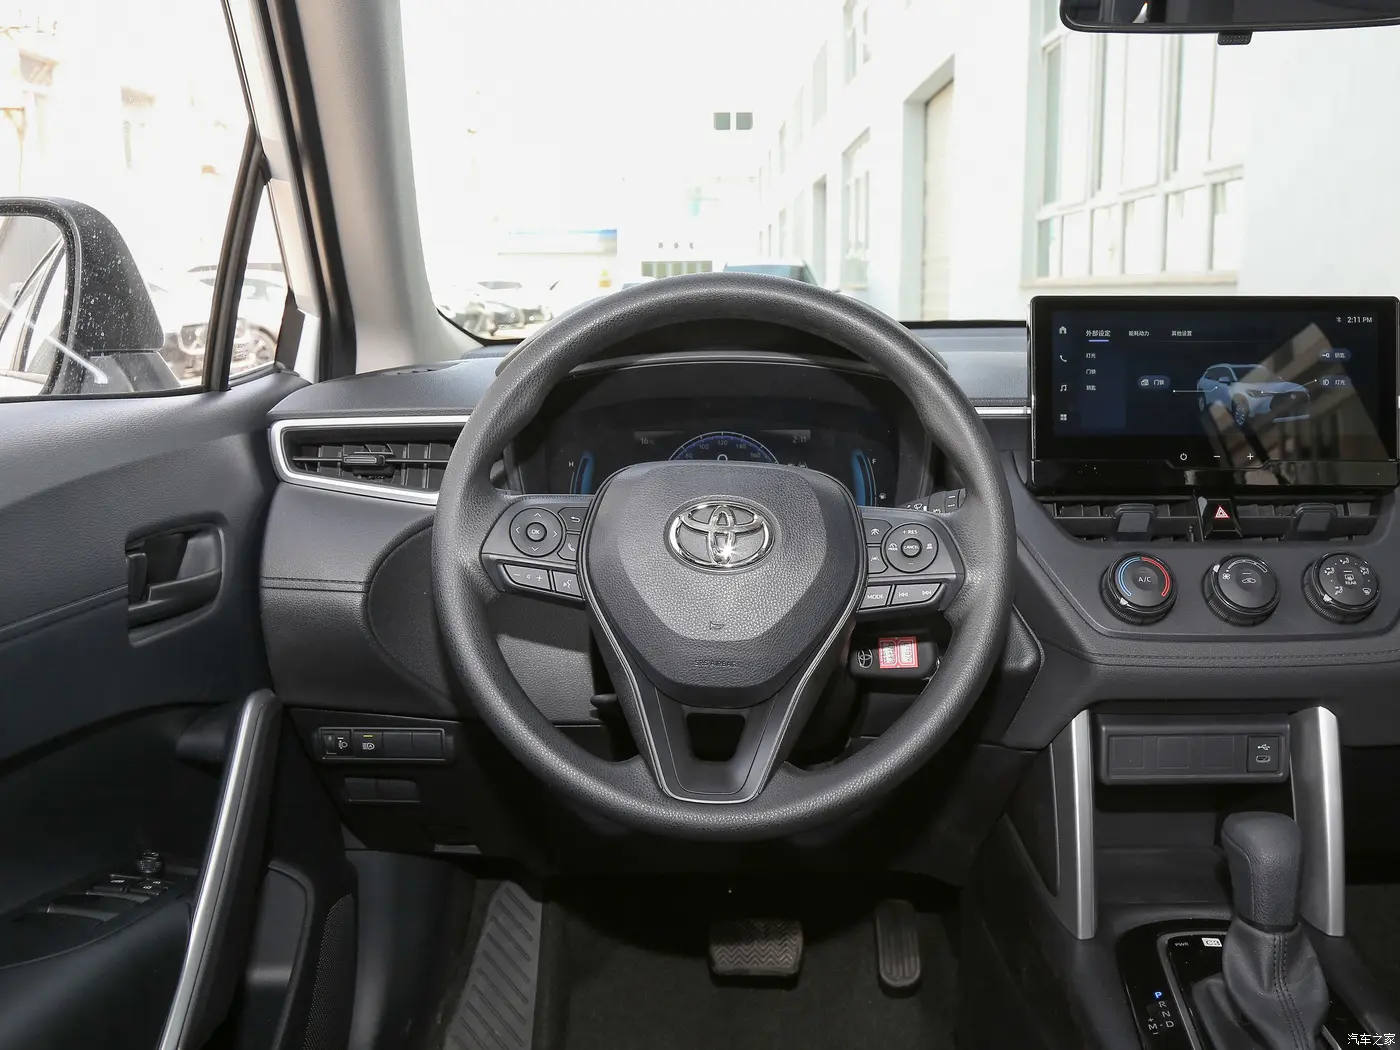 2023 דגם טויוטה פנסיל קורולה קרוס מחיר סיטונאי 2.0 ליטר בקרת שיוט אדפטיבית במהירות מלאה טויוטה SUV